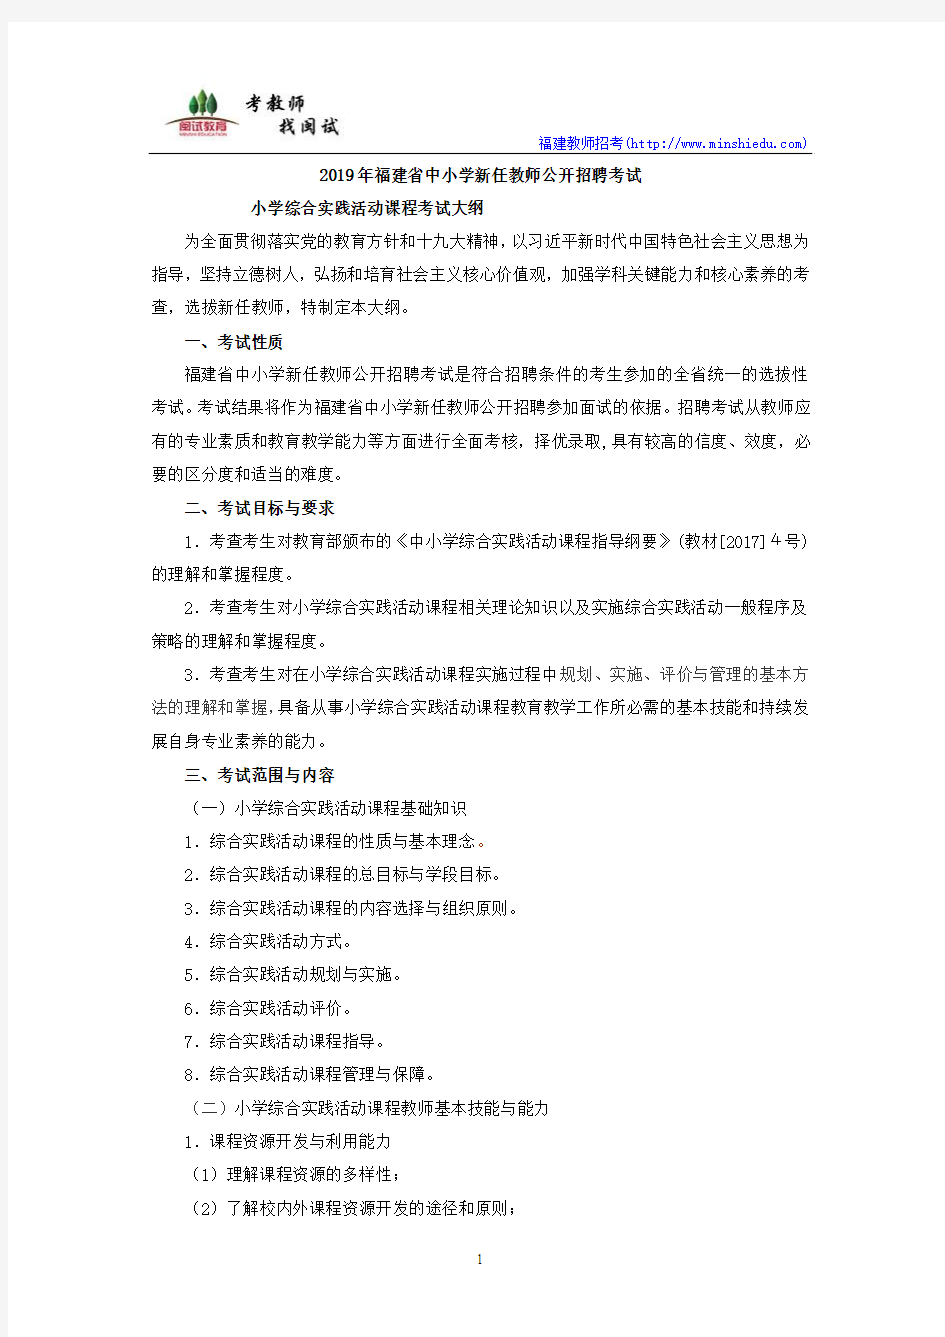 2019年福建省教师公开招聘考试小学综合实践活动课程考试大纲